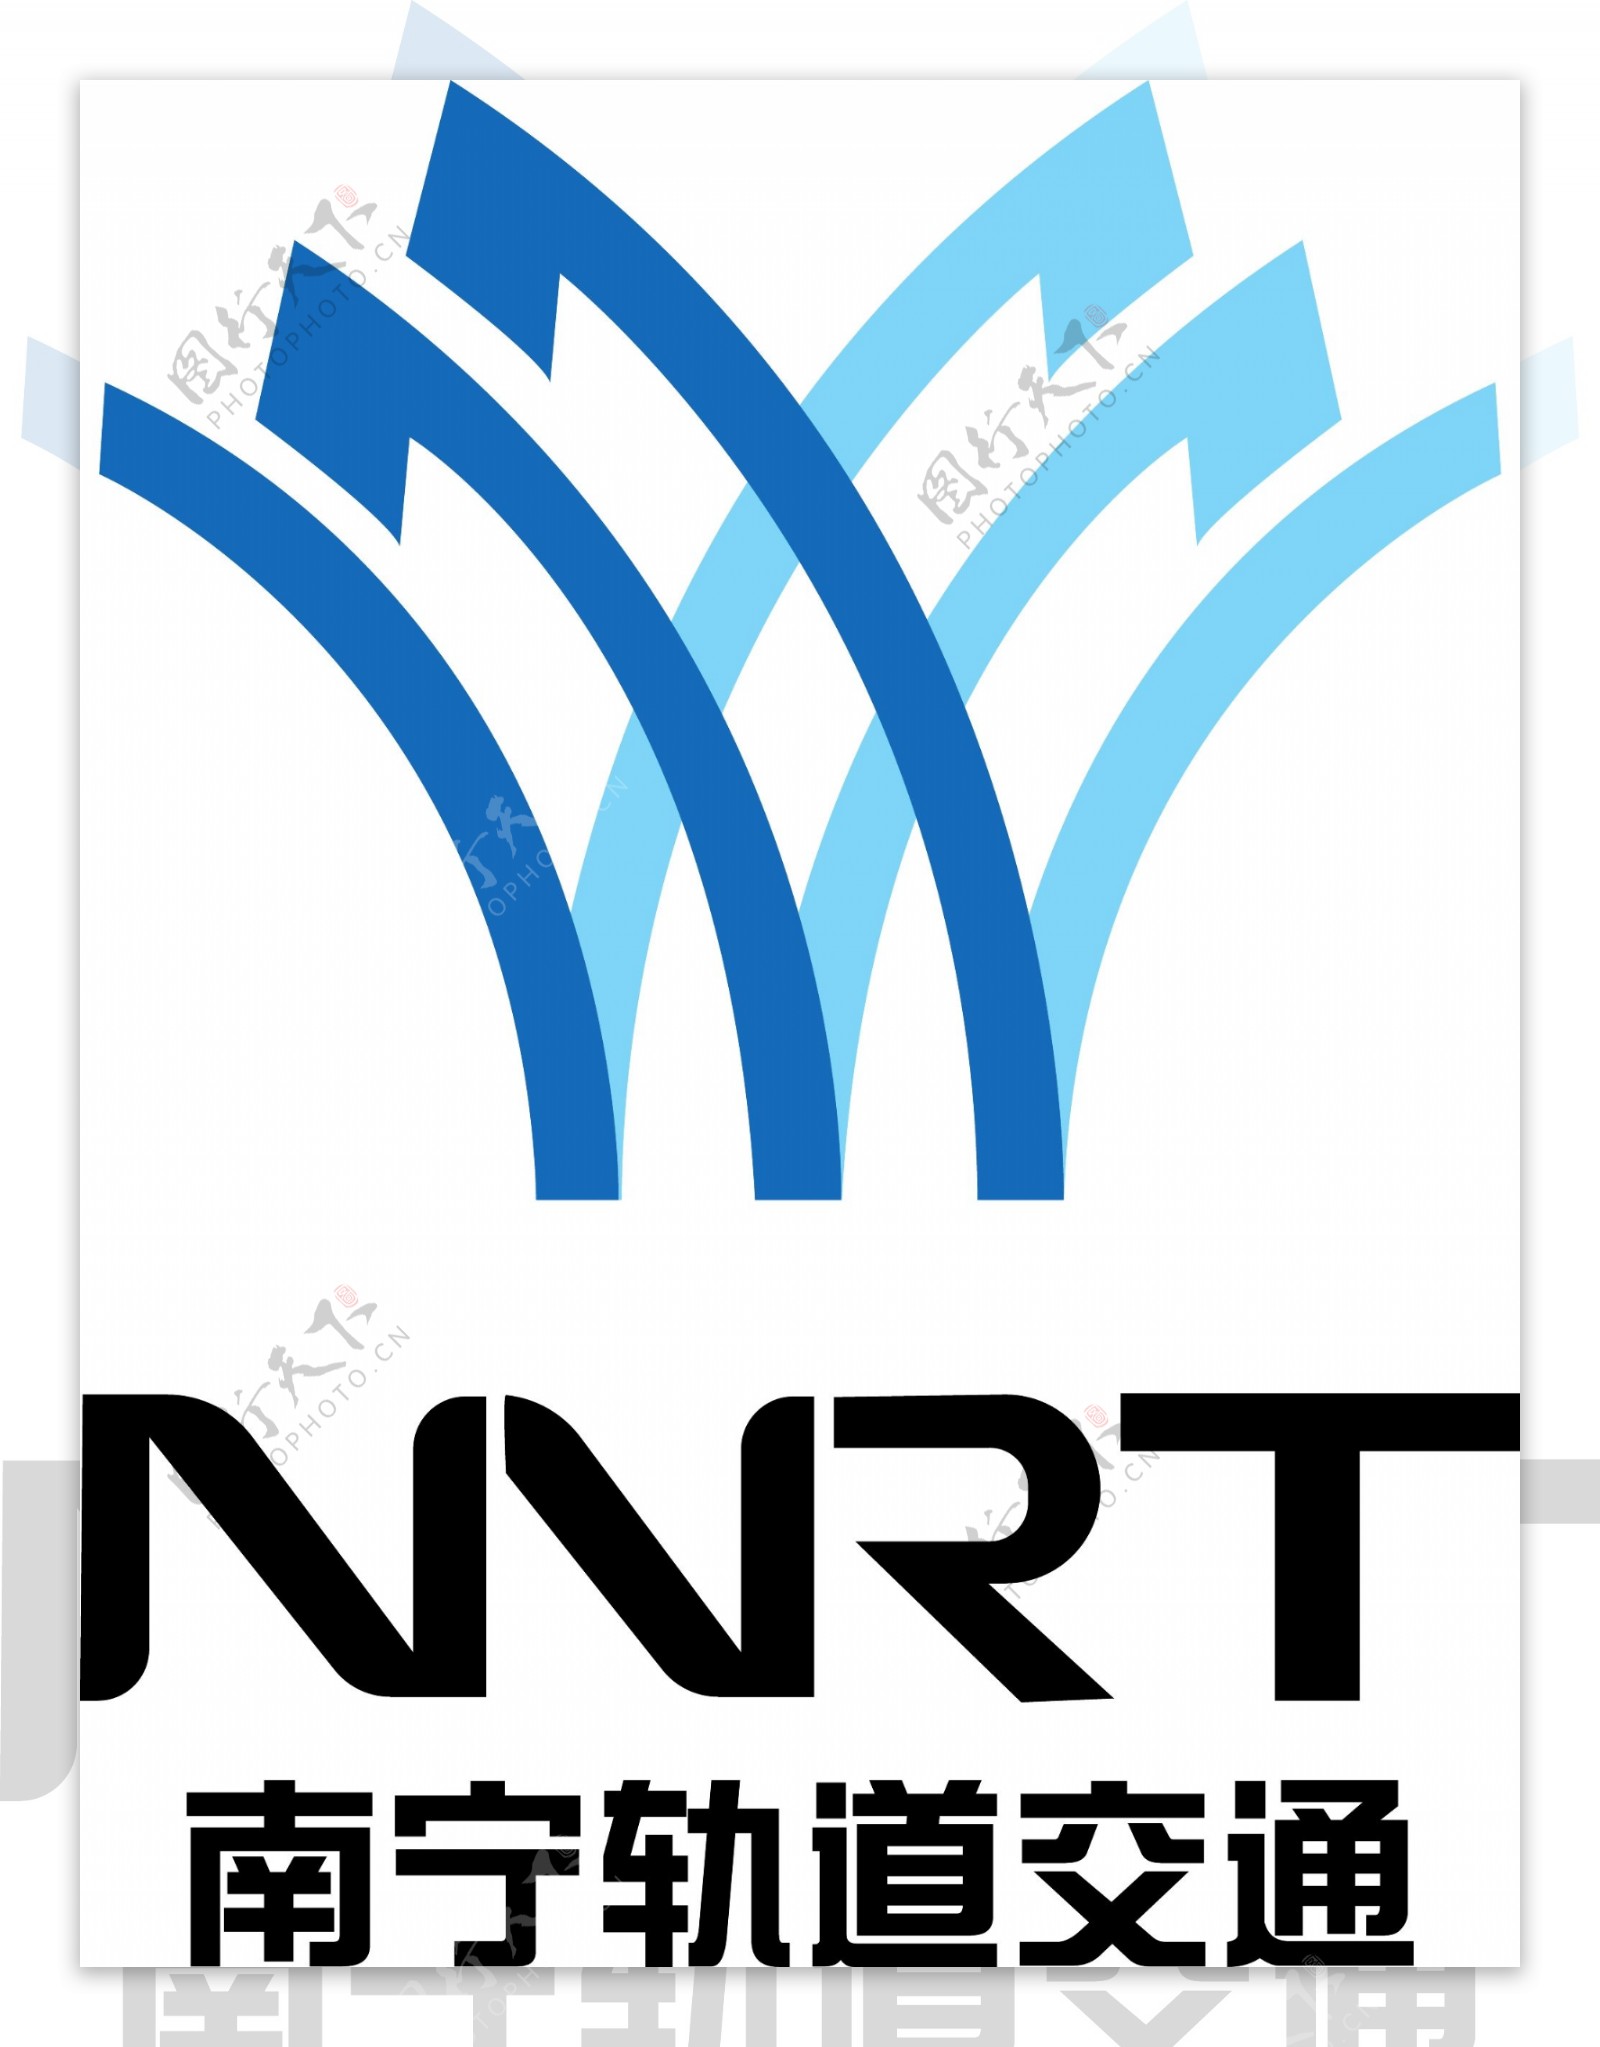 南宁地铁logo